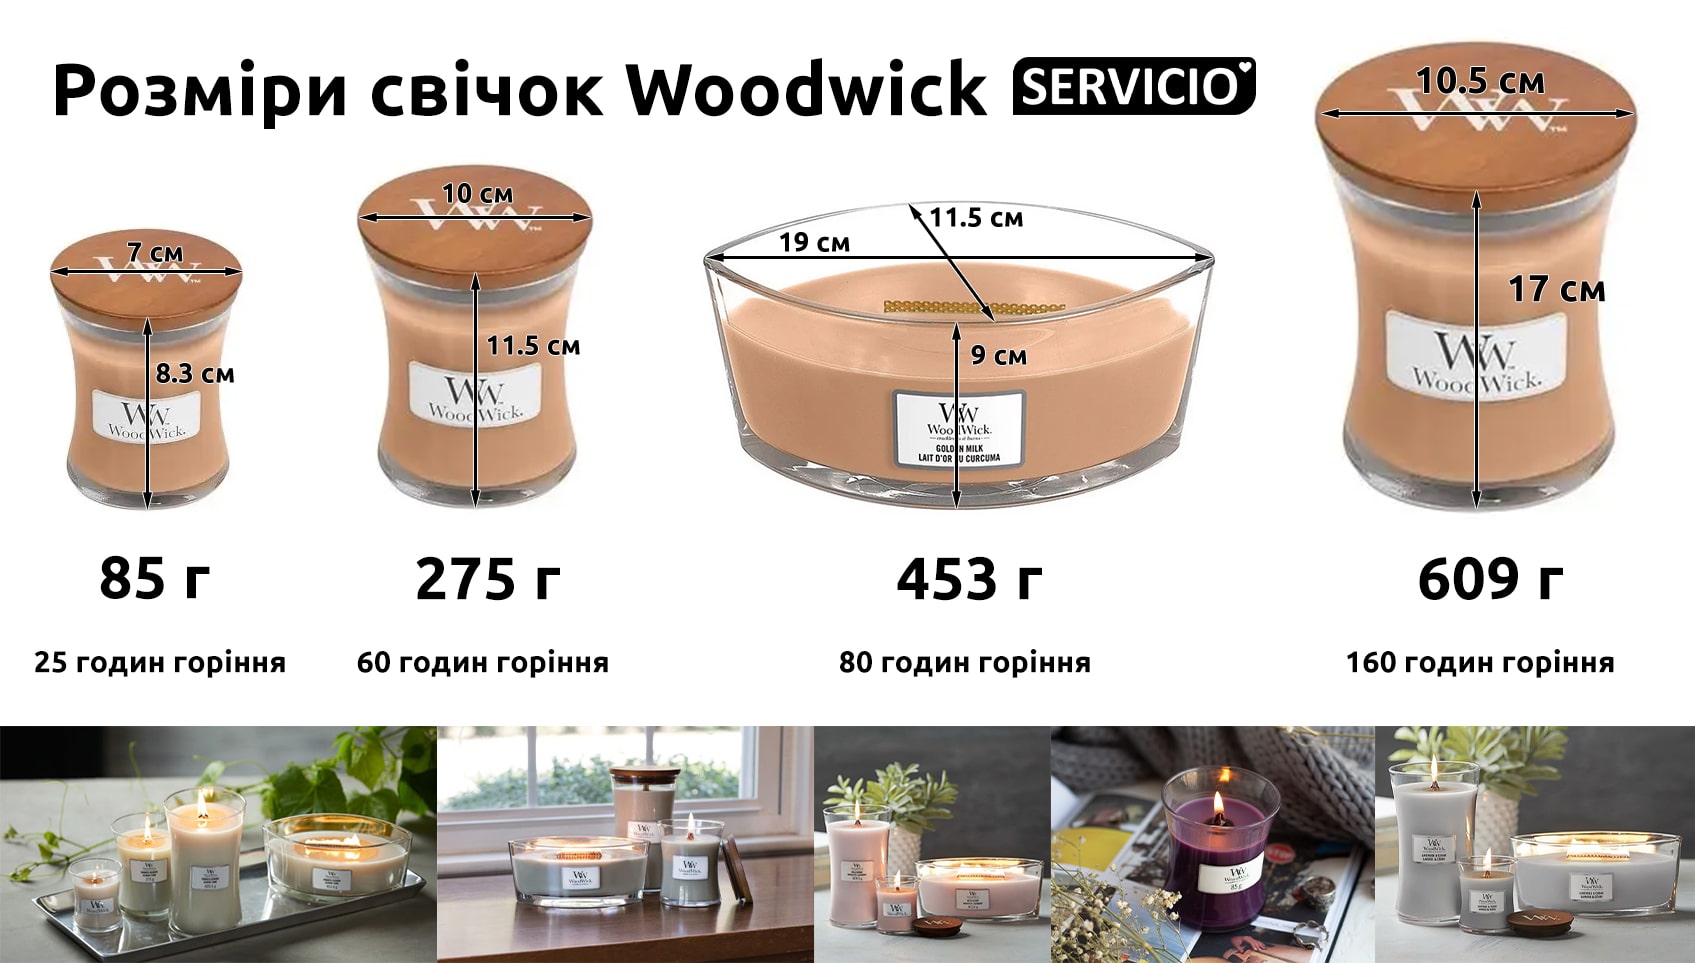 Розміри свічок Woodwick